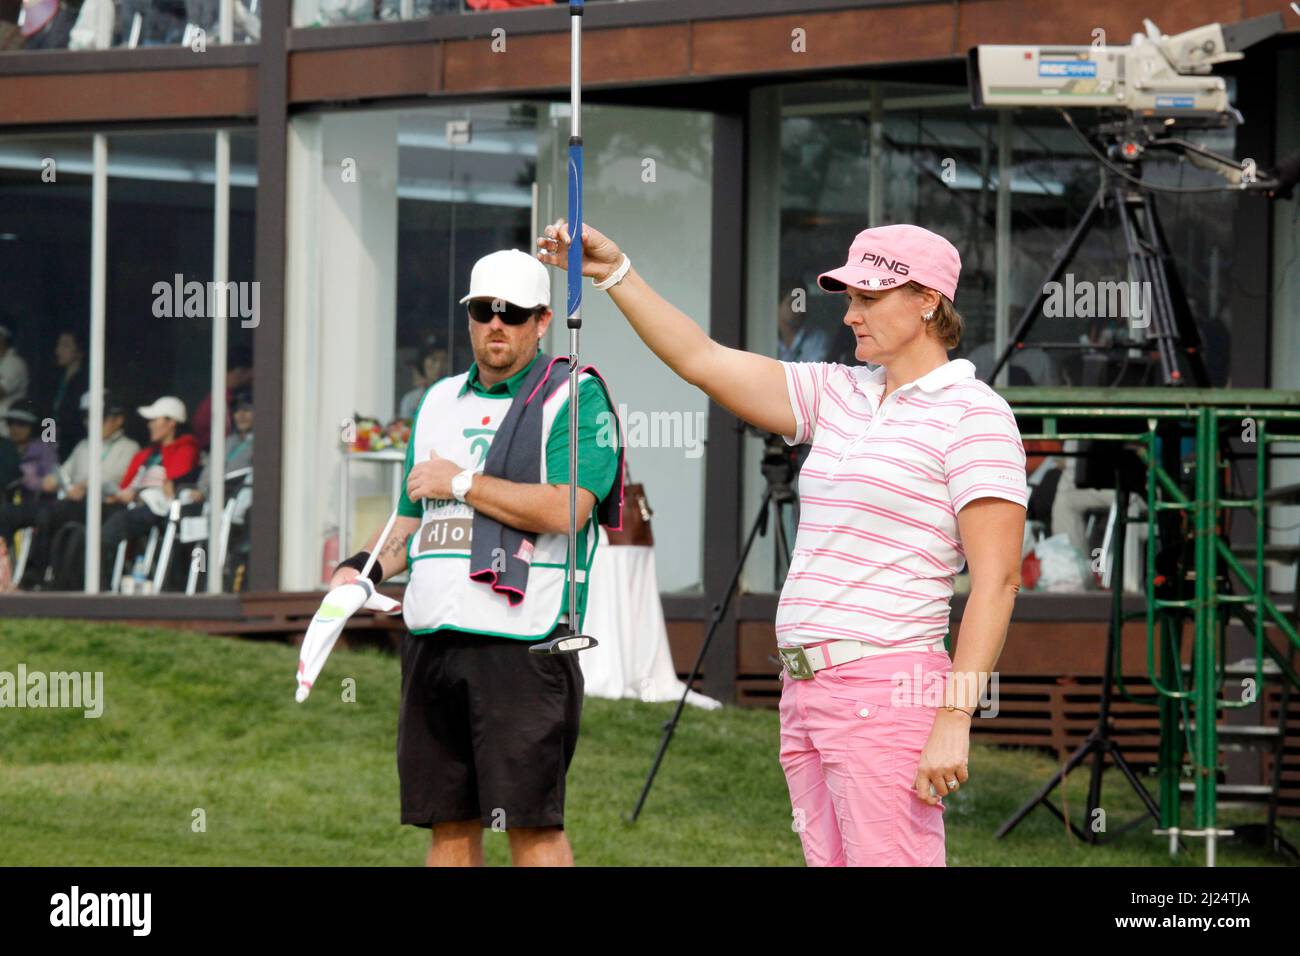 9 octobre 2011-Incheon, Corée du Sud-HJORTH Maria de Swden, a aligné un putt sur le 18th trous lors de la finale du championnat LPGA par Hana Bank au club de golf SKY72 à Incheon le 9 octobre 2011, Corée du Sud. Banque D'Images